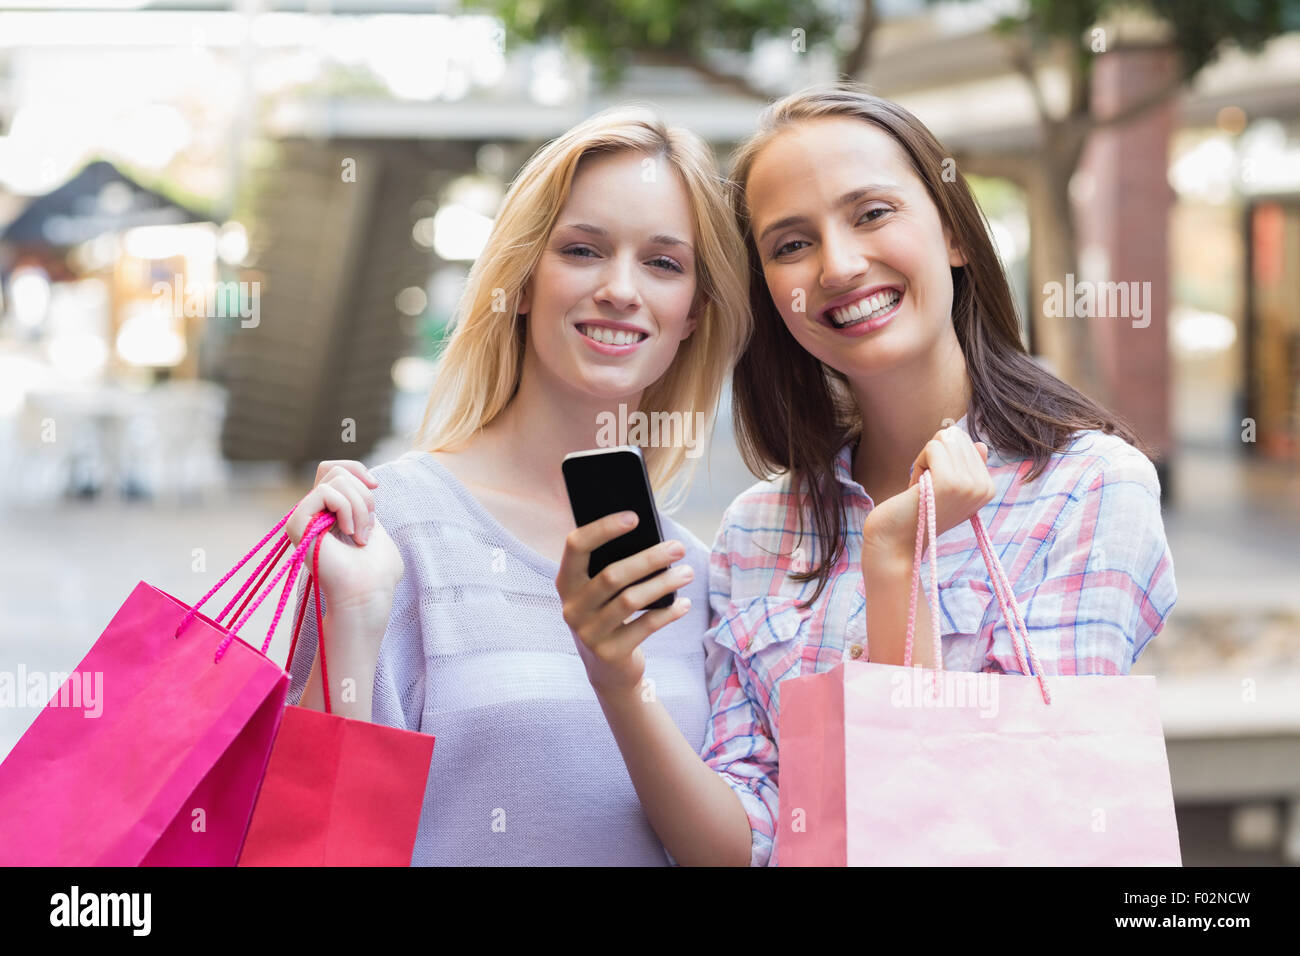 Glückliche Frauen Freunde lächelnd in die Kamera mit Einkaufstüten Stockfoto